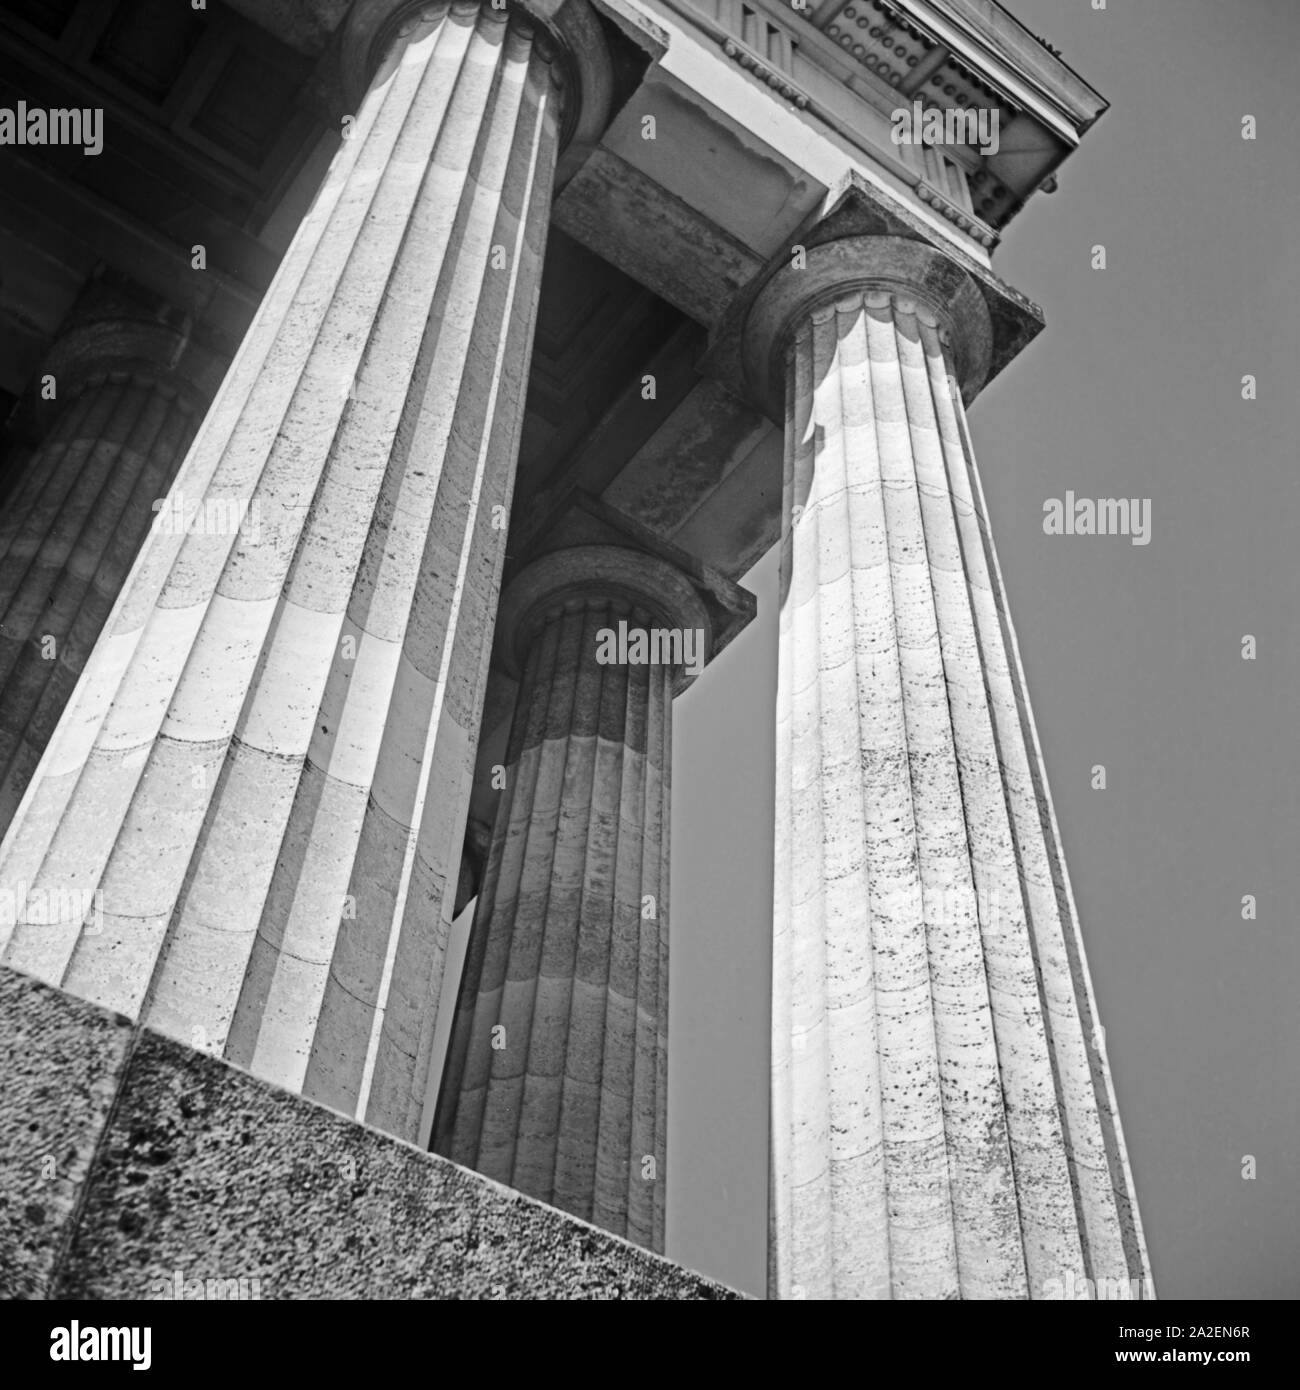 Säulen an der Walhalla bei Donaustauf, Deutschland 1930er Jahre. Spalten in der Gedenkstätte Walhalla in der Nähe von Donaustauf, Deutschland 1930. Stockfoto